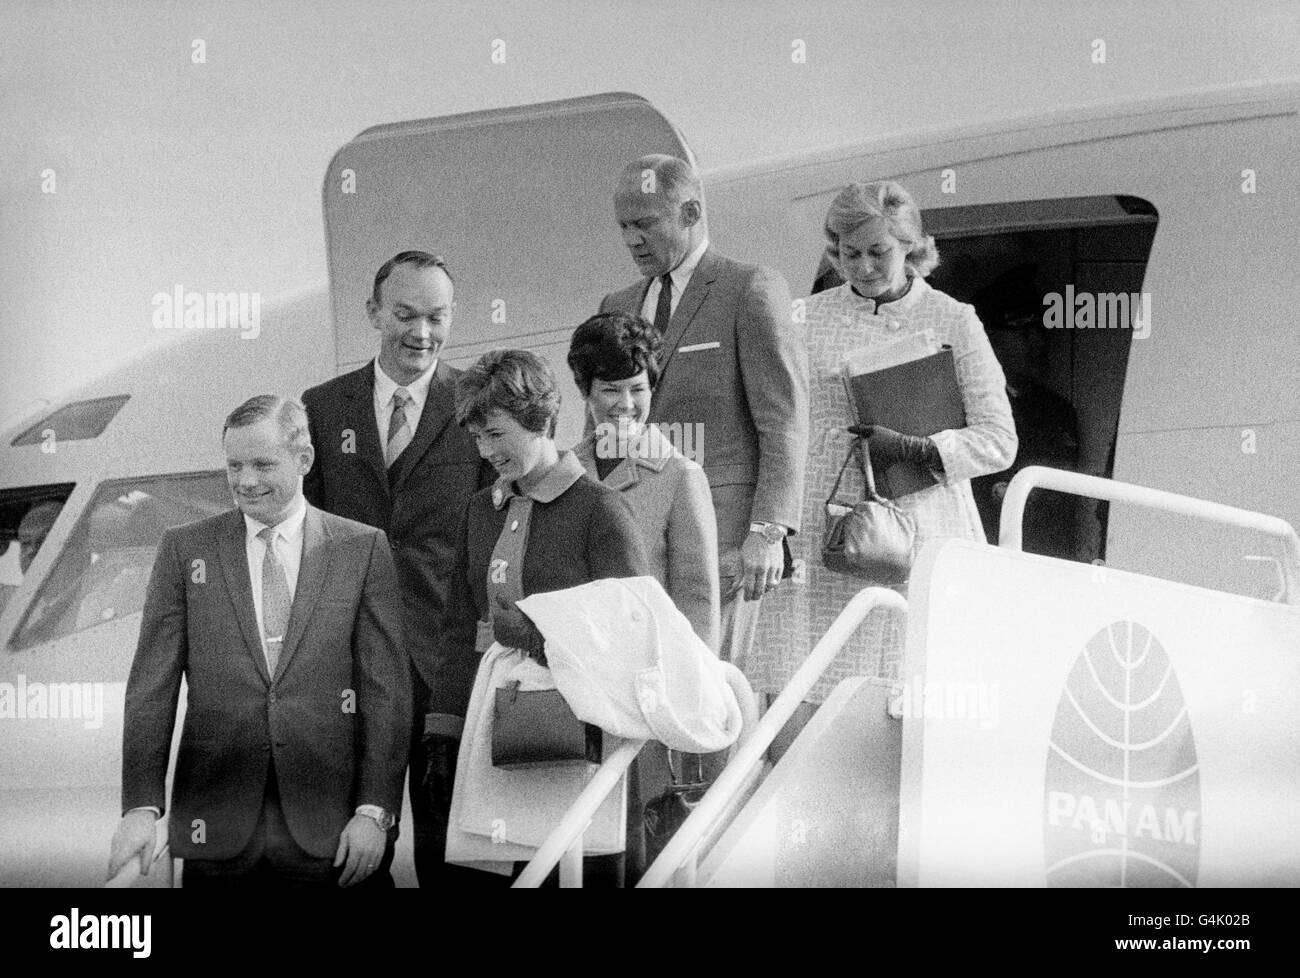 Die amerikanischen Mondlandeastronauten von Apollo 11 verlassen das Präsidentenflugzeug am Londoner Flughafen Heathrow bei ihrer Ankunft aus Berlin zu einem 24-stündigen Besuch in Großbritannien während ihrer 22-tägigen Weltreise aus 38 Nationen. Von links nach rechts: Neil Armstrong, Michael Collins und Edwin 'Buzz' Aldrin mit ihren Frauen Janet Pat und Joan. Stockfoto